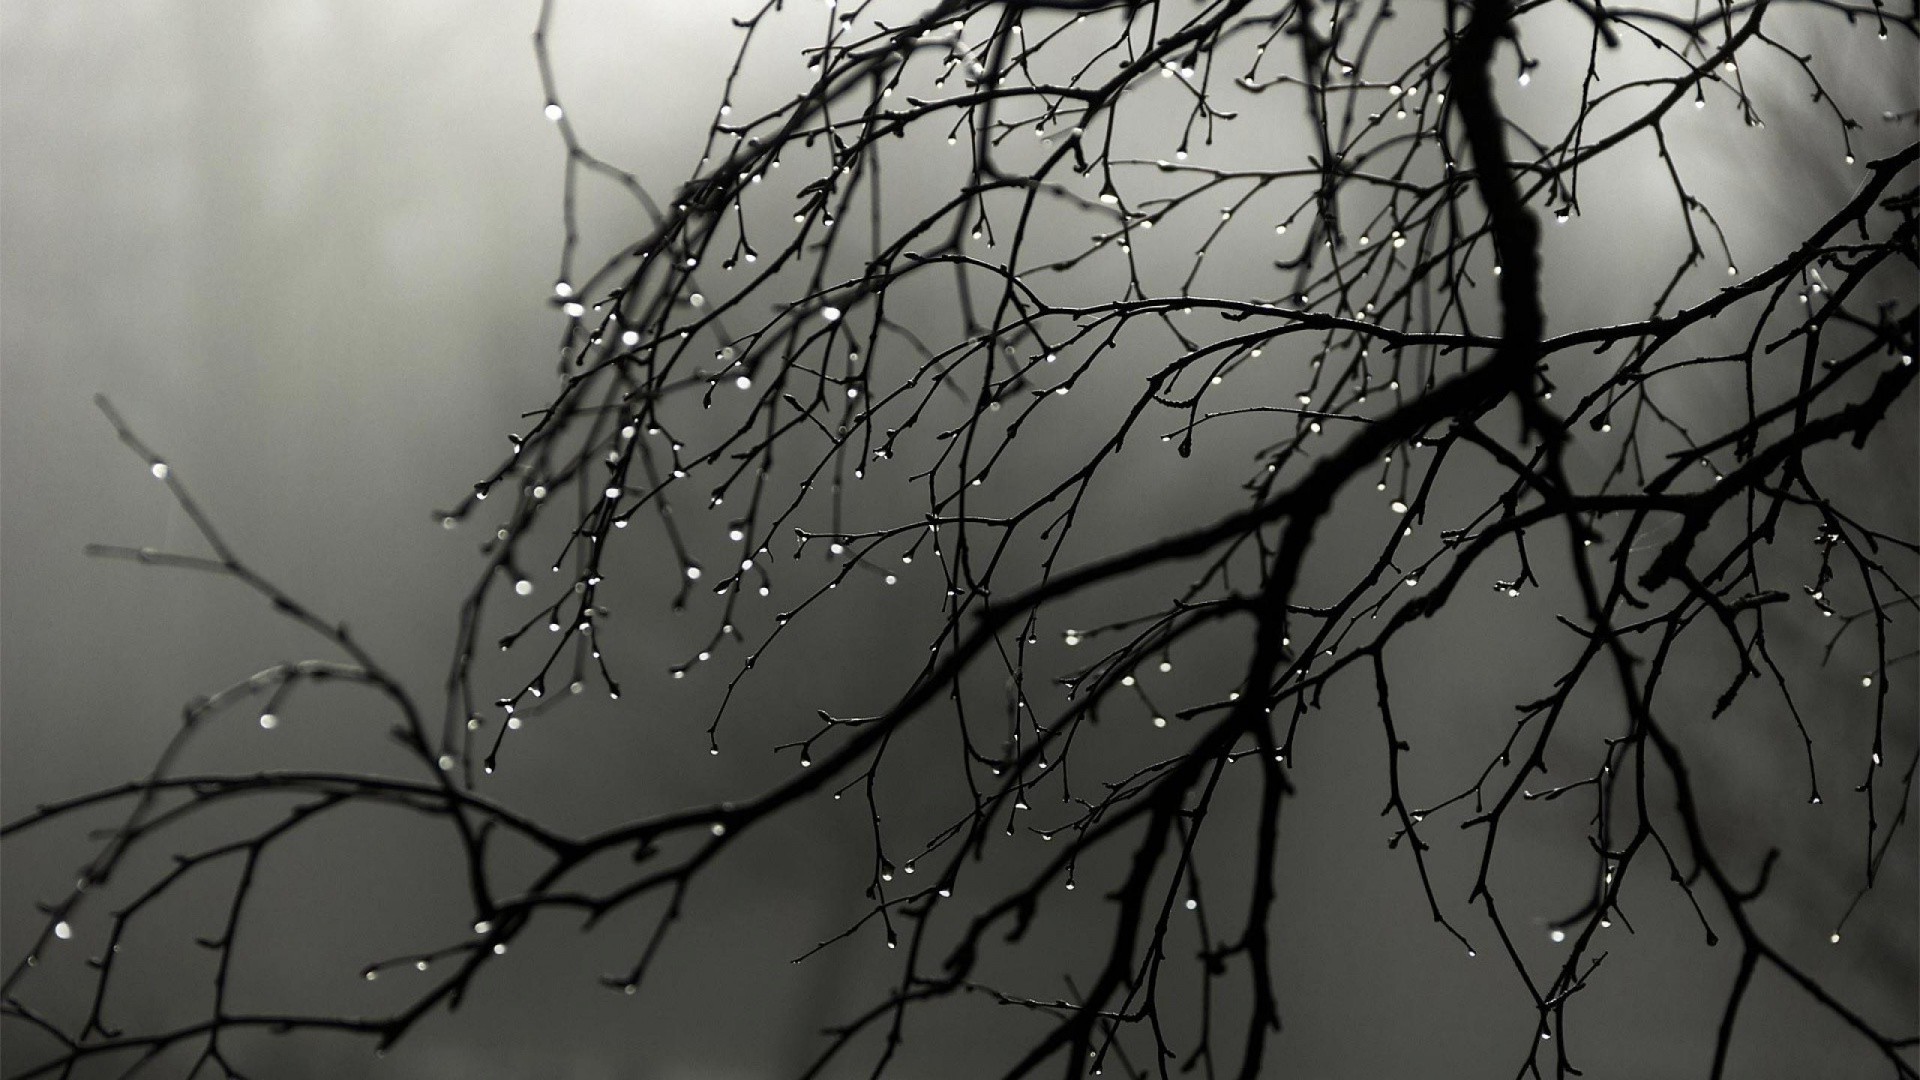 Бесплатное фото Ветка с опавшими листьями в дождливую погоду